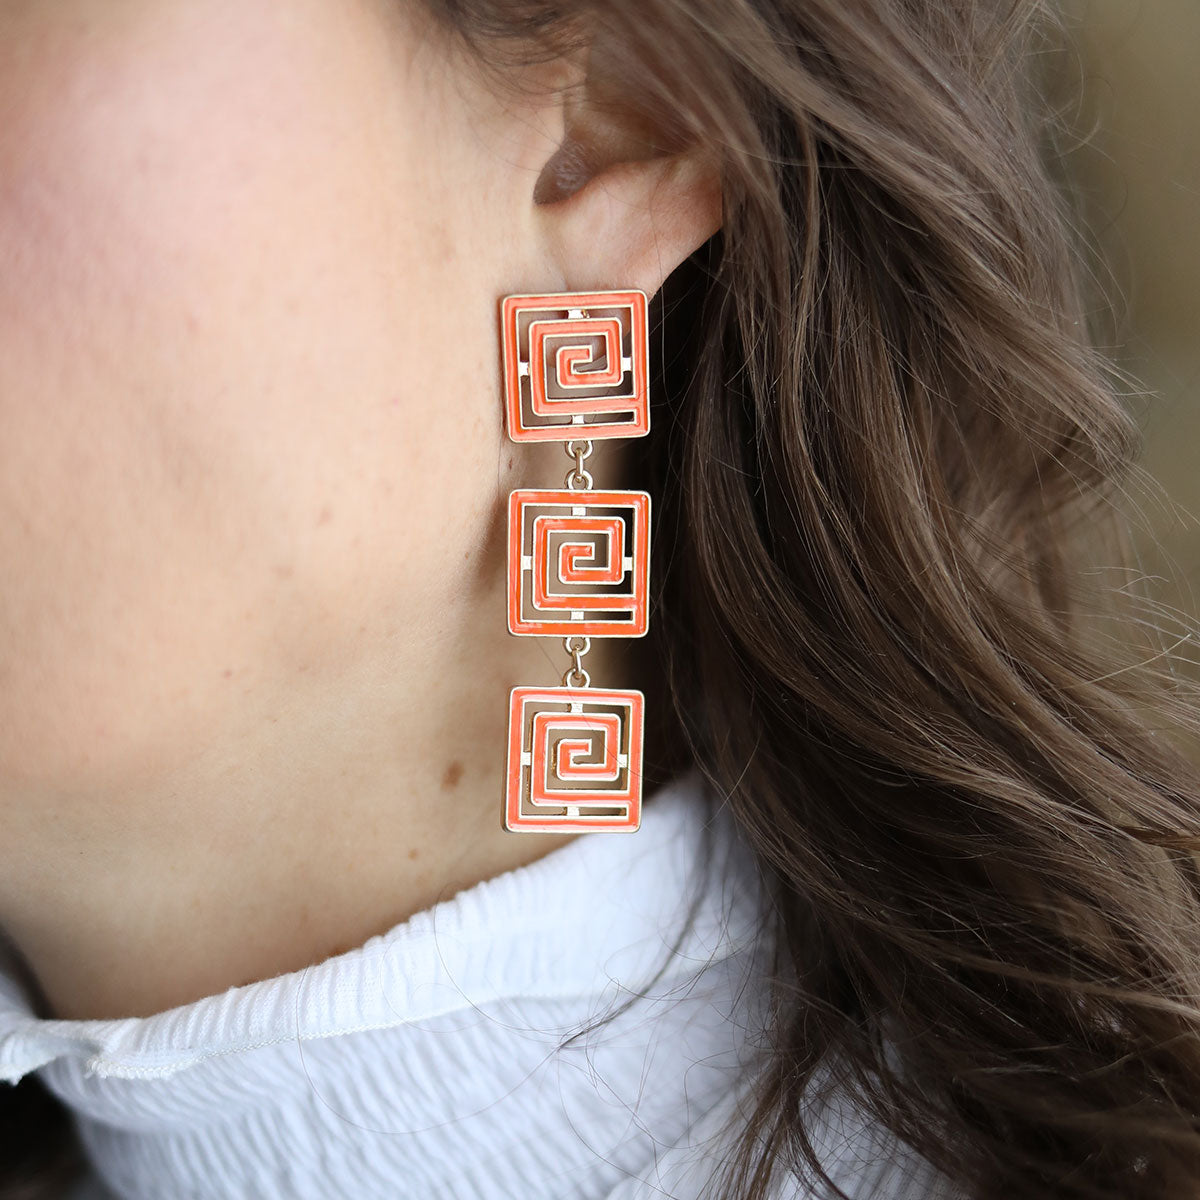 Gretchen Game Day Greek Keys Linked Enamel Earrings in Orange by CANVAS